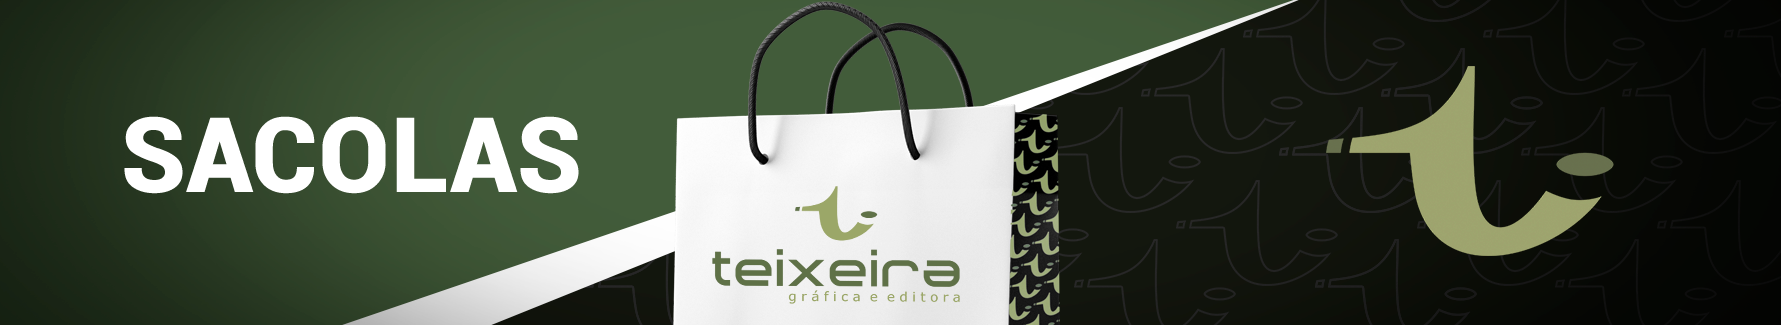 Teixeira Gráfica e Editora